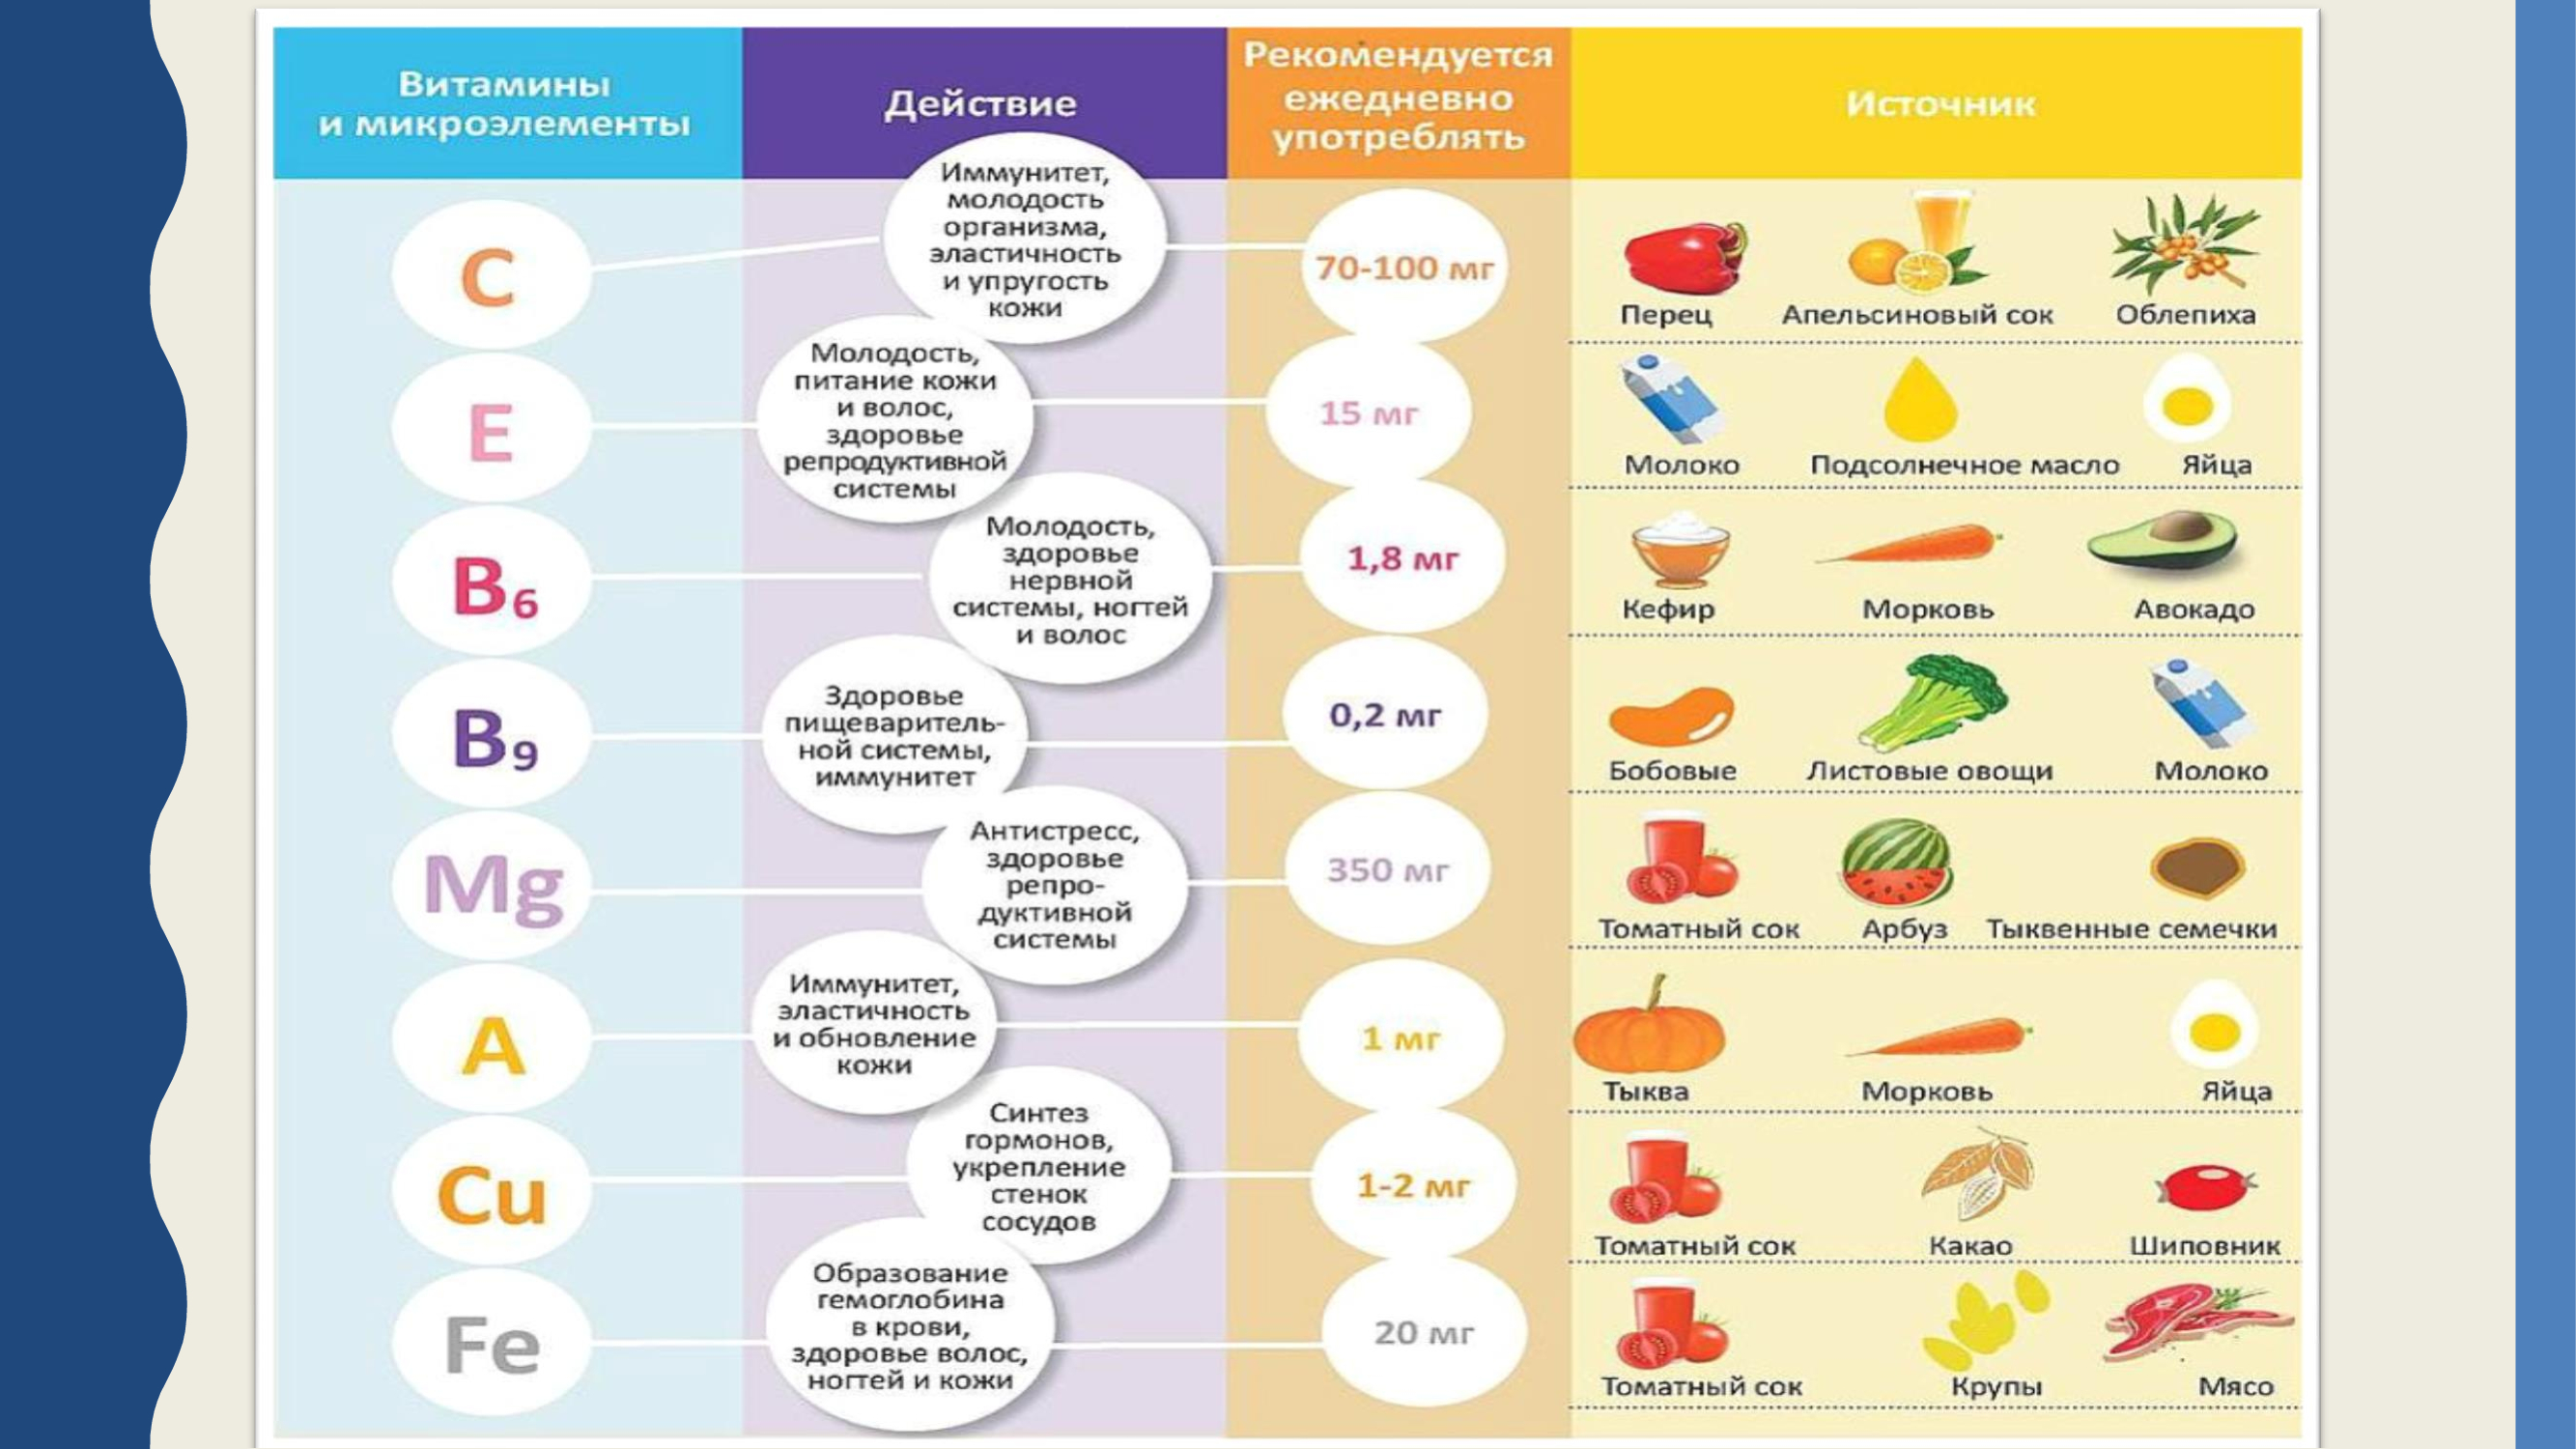 Полезные витамины в продуктах. Витамины и микроэлементы. Здоровое питание таблица витаминов. Источник витаминов и микроэлементов. Микроэлементы и витамины в пище.